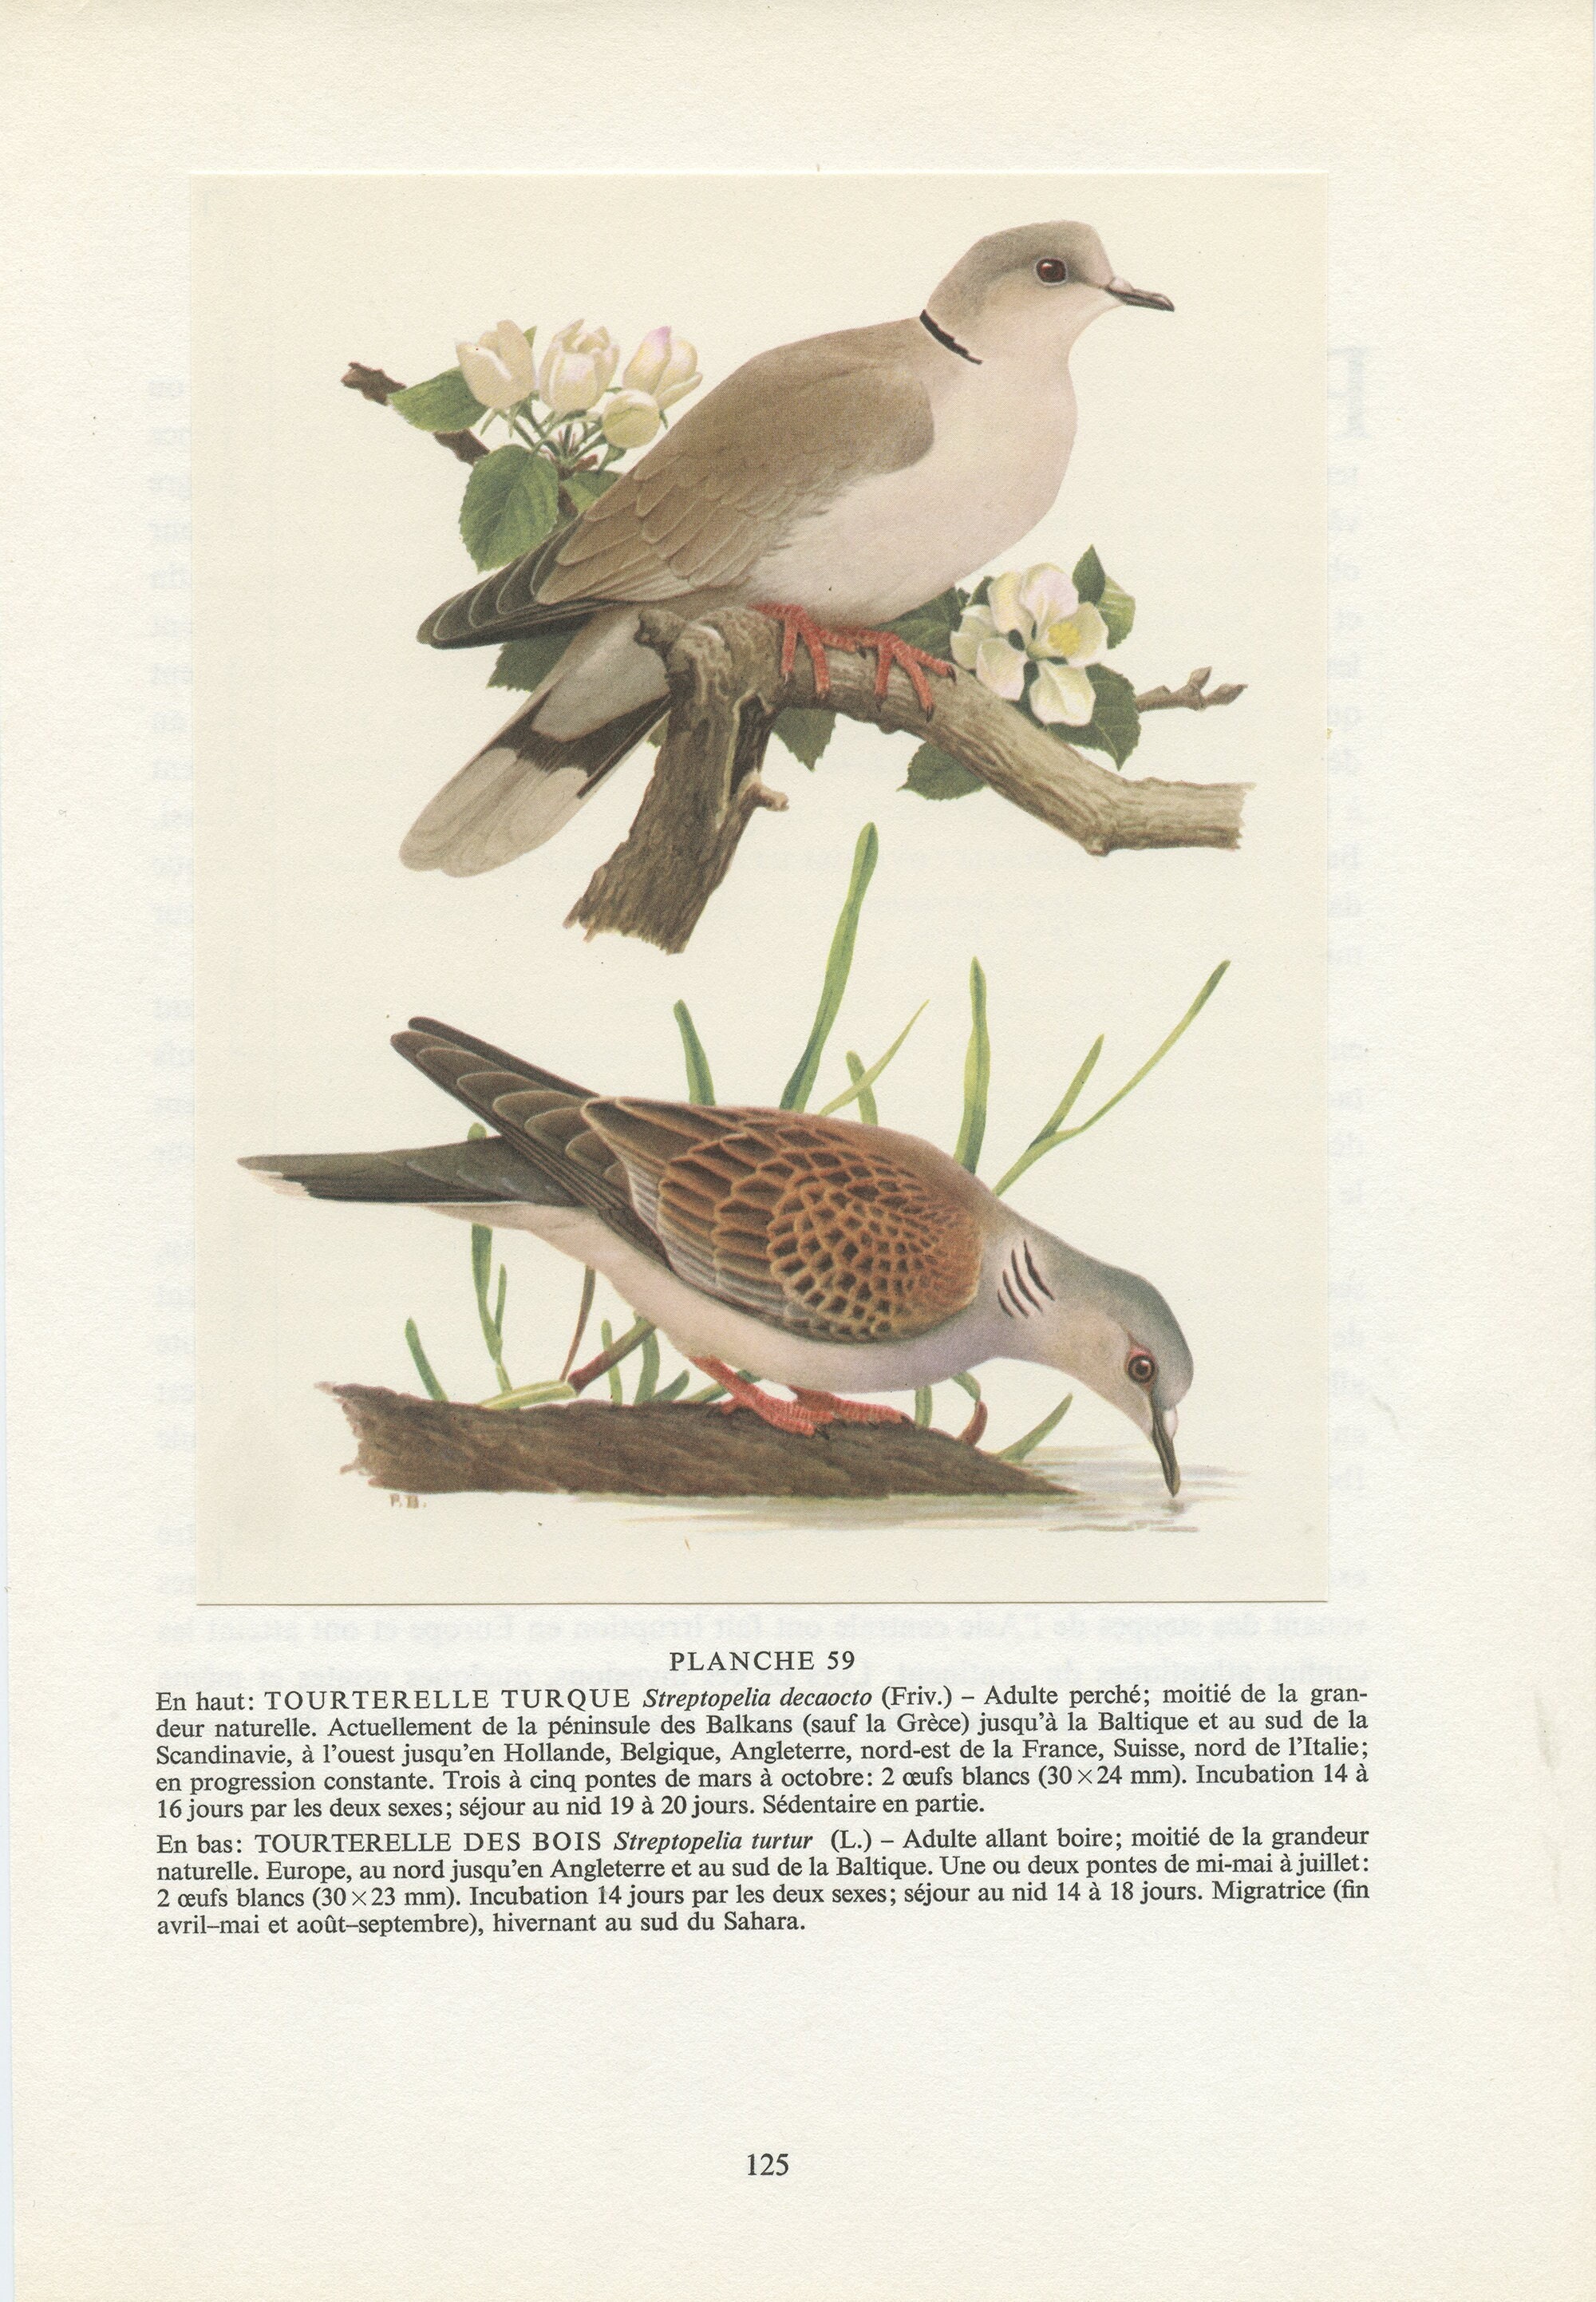 Tourterelle Des Bois + Turque 1961. Illustration d'oiseaux Vintage Paul Barruel. Décoration Murale O